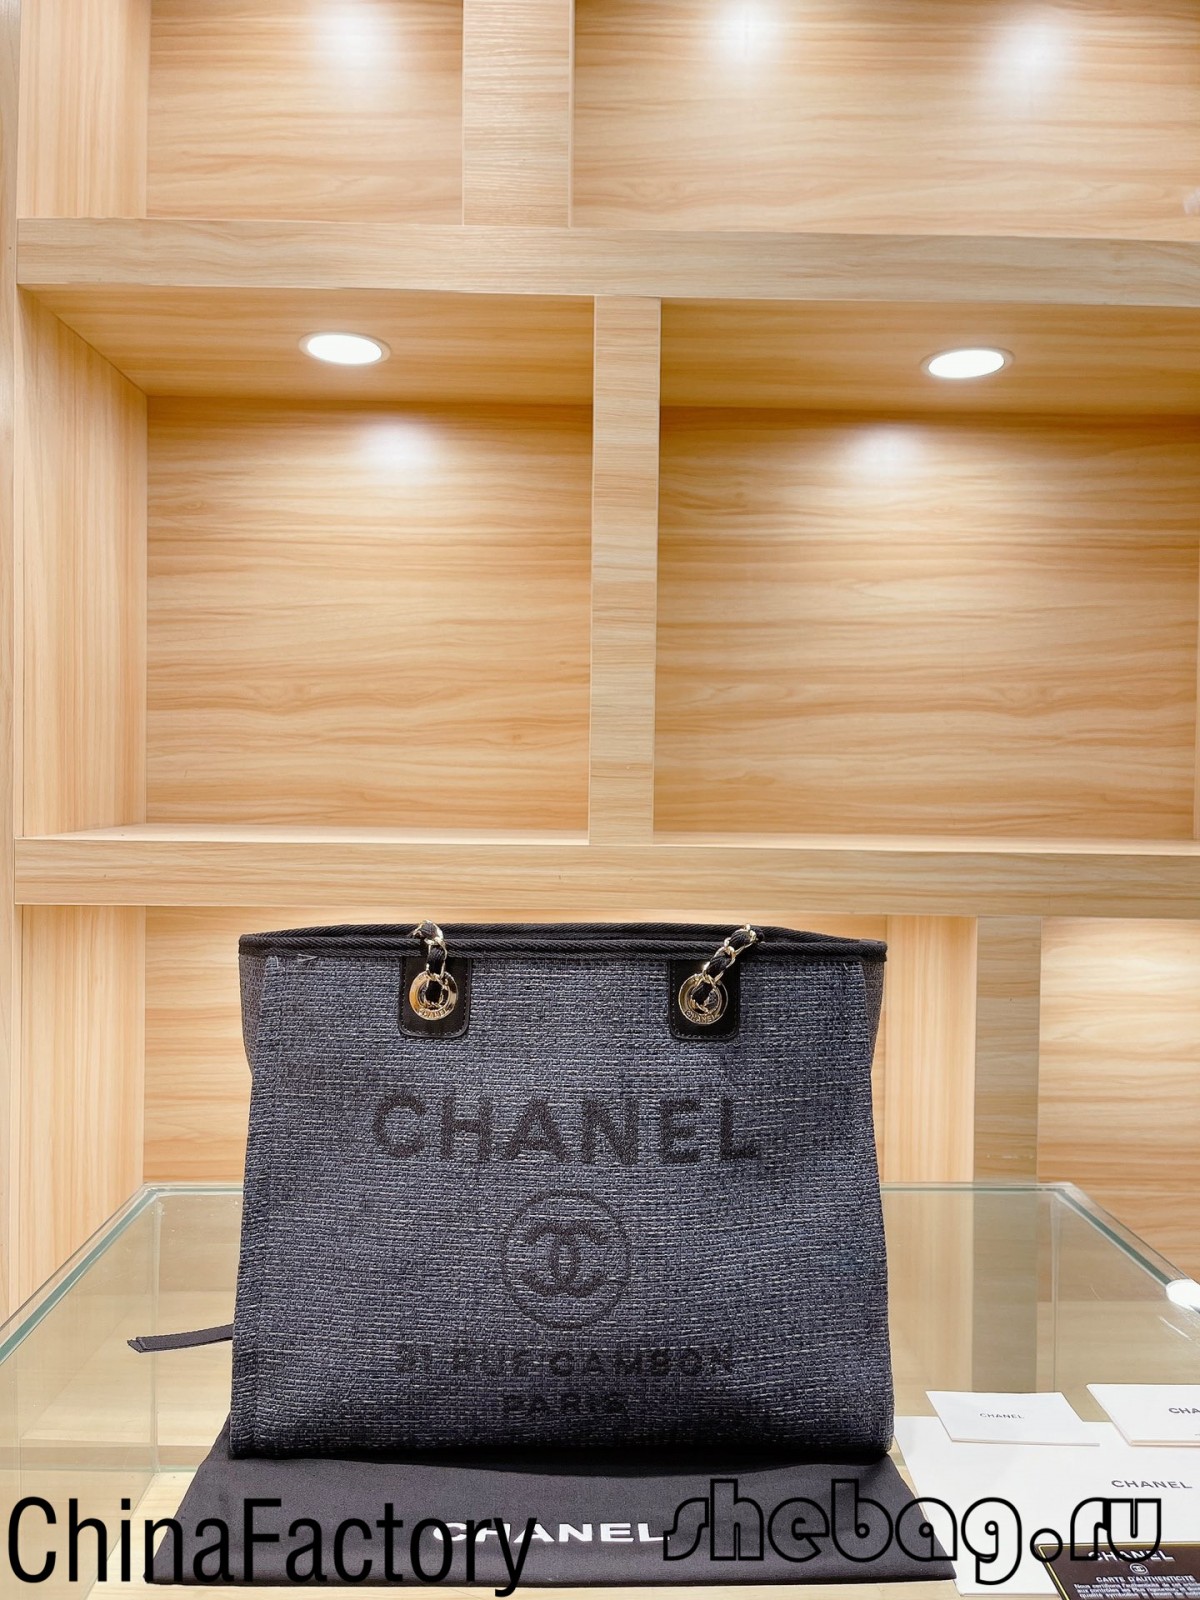 Chanel Deauville Canvas Tote Bag Replik Großhandelsverkäufer Empfehlung (2022 Hottest)-Beste Qualität gefälschte Louis Vuitton Bag Online Store, Replika Designer-Tasche ru